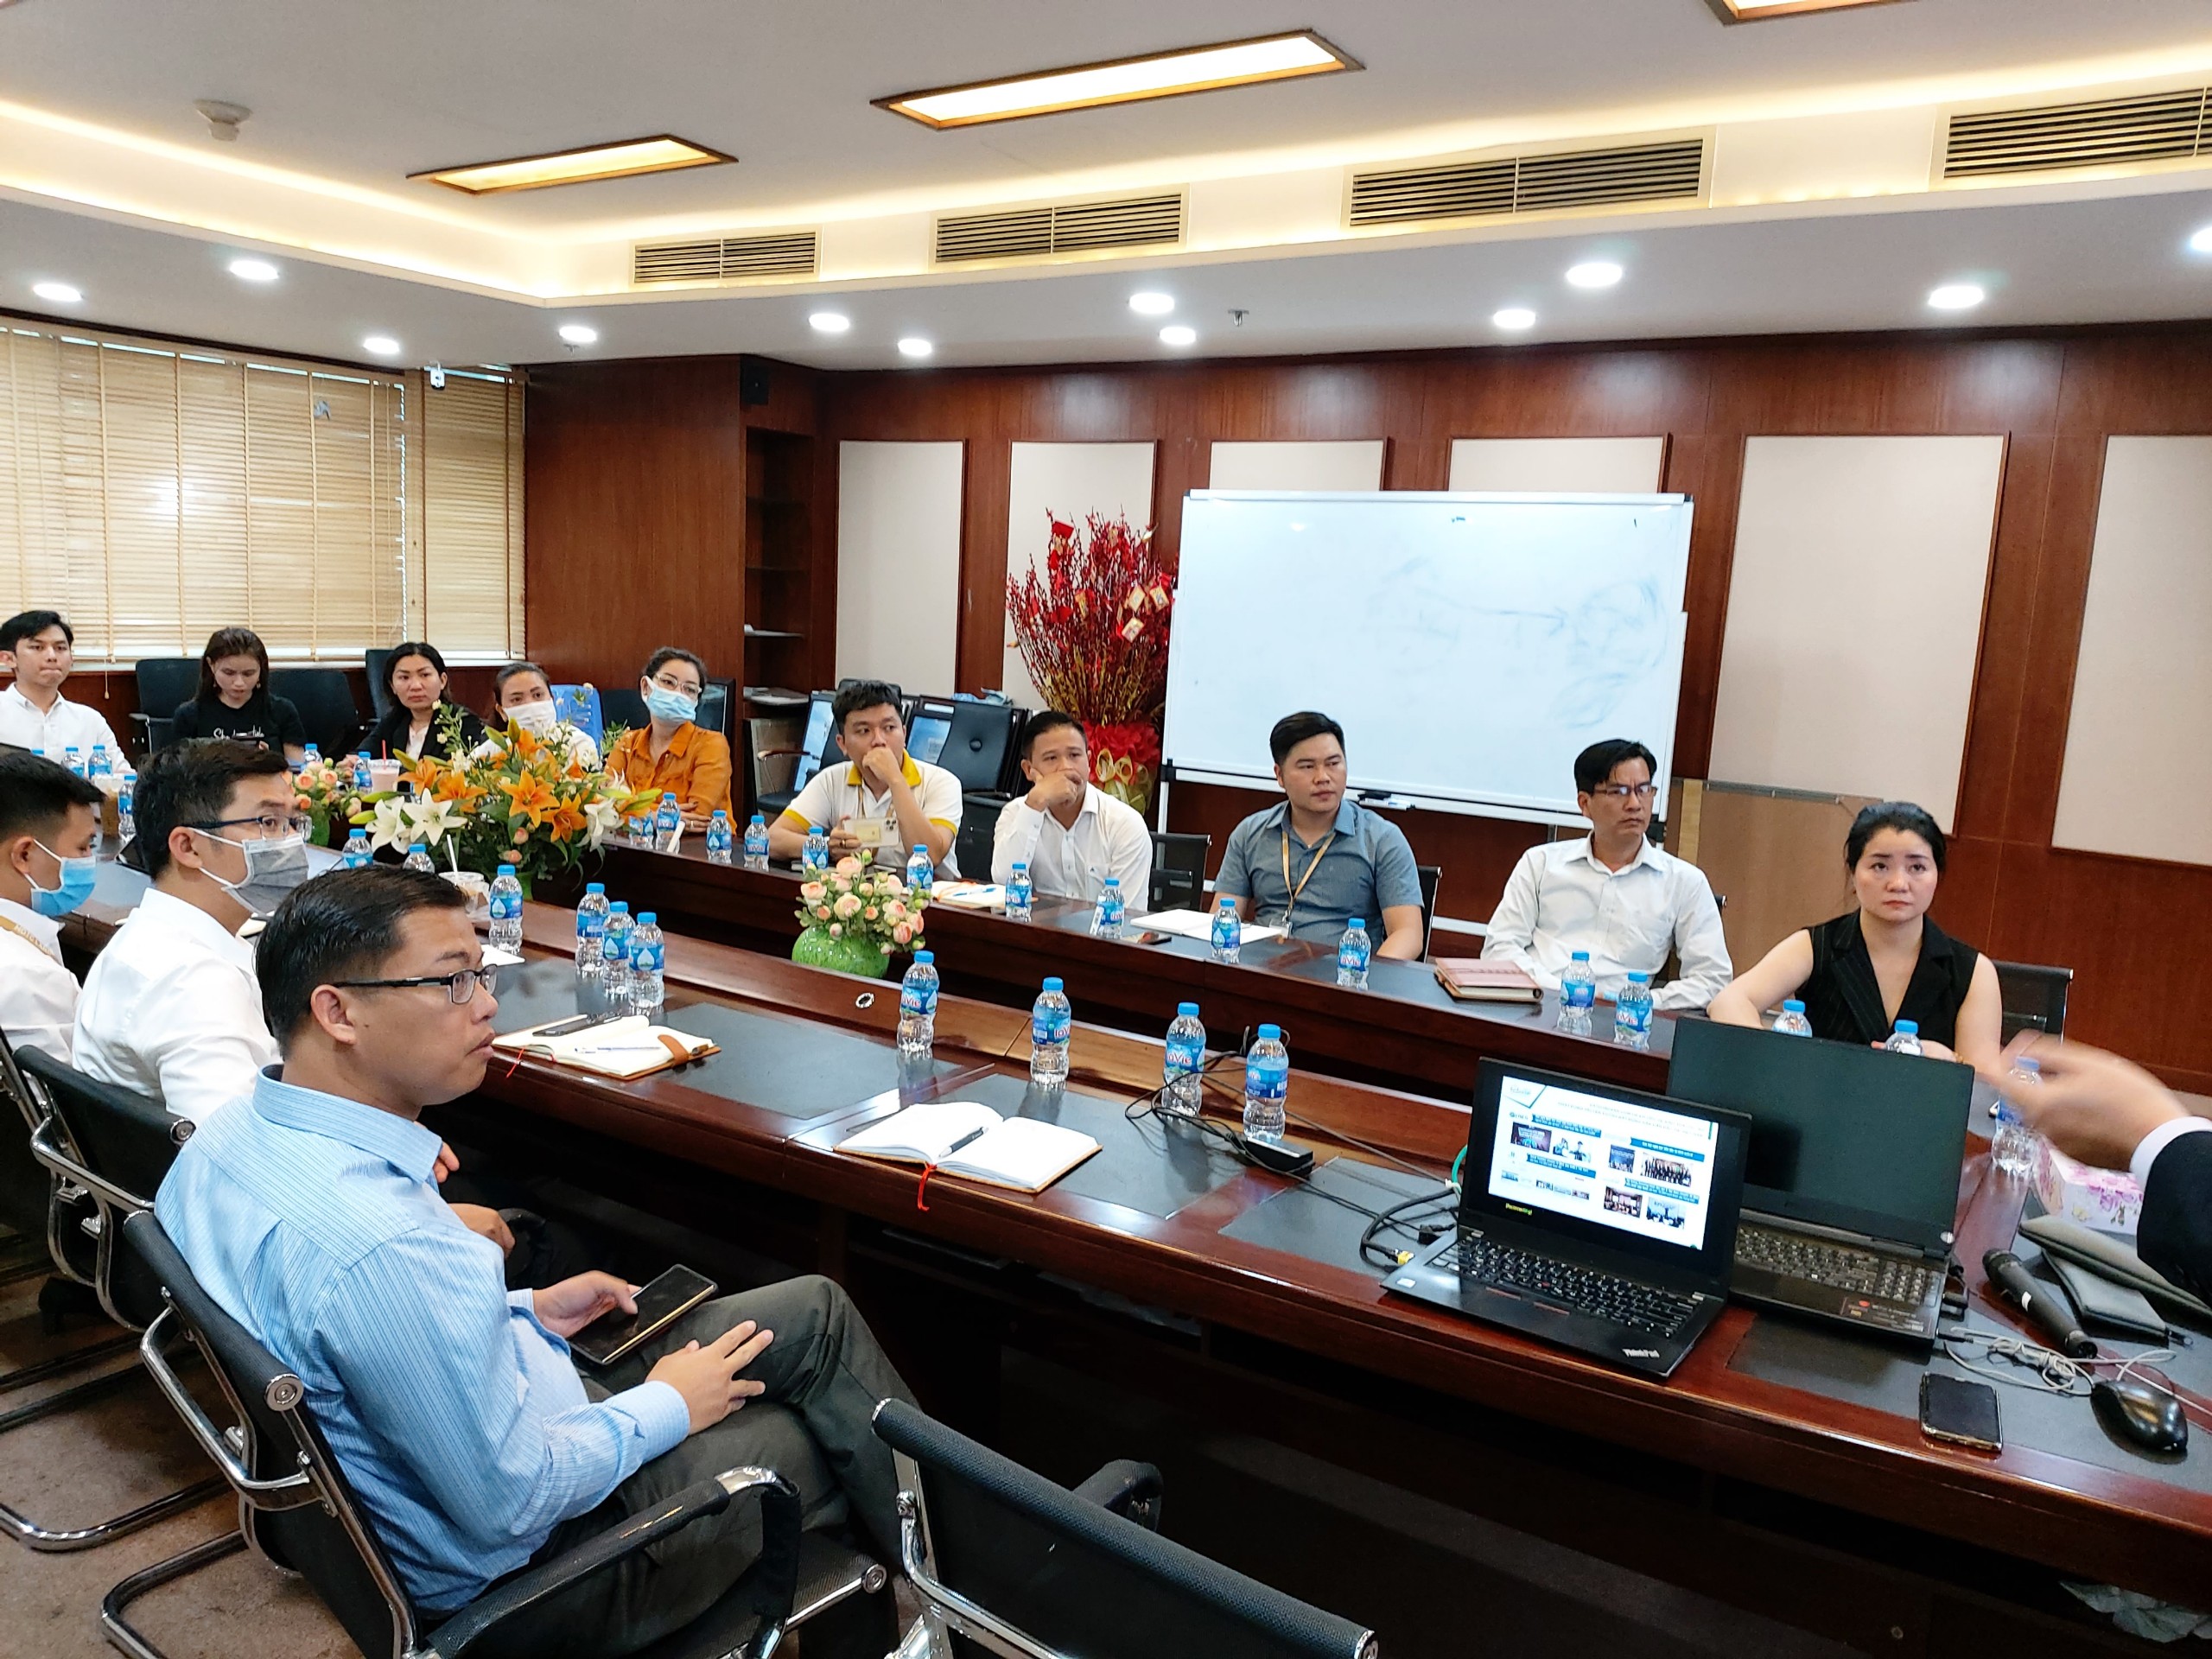 HDTC Land và Batdongsan.com.vn bàn kế hoạch hợp tác chiến lược